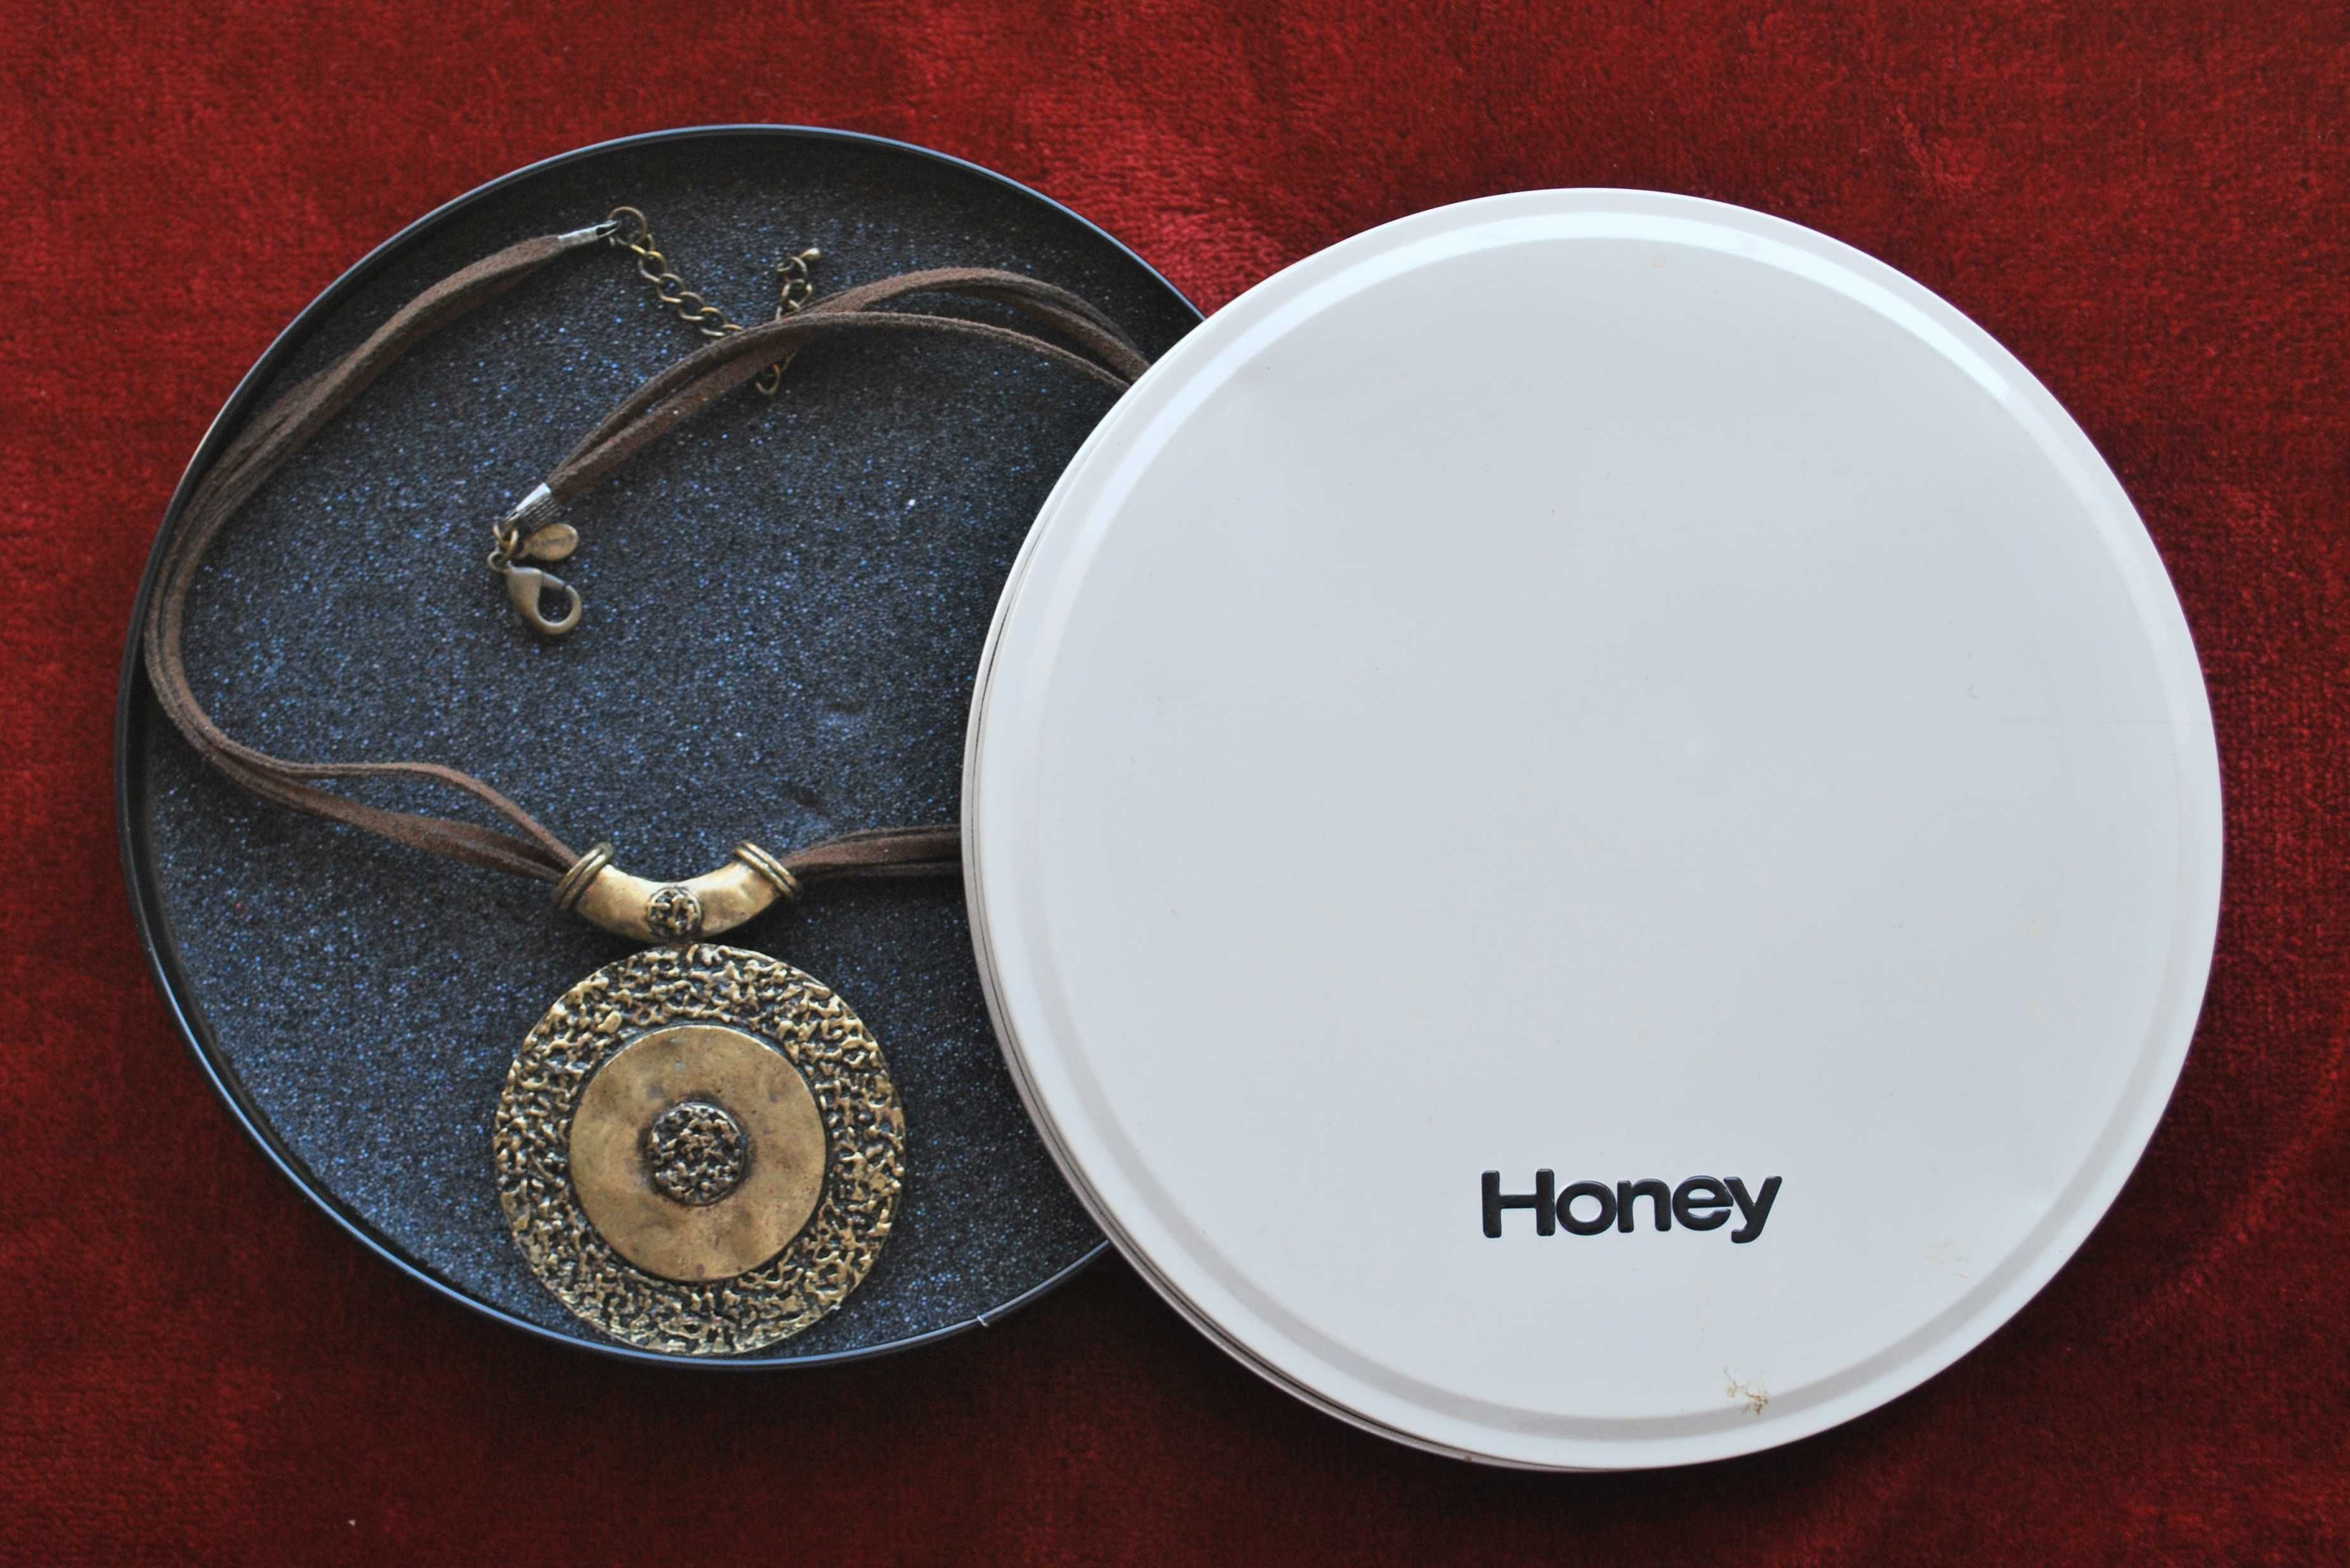 Colar da marca Honey de 2008